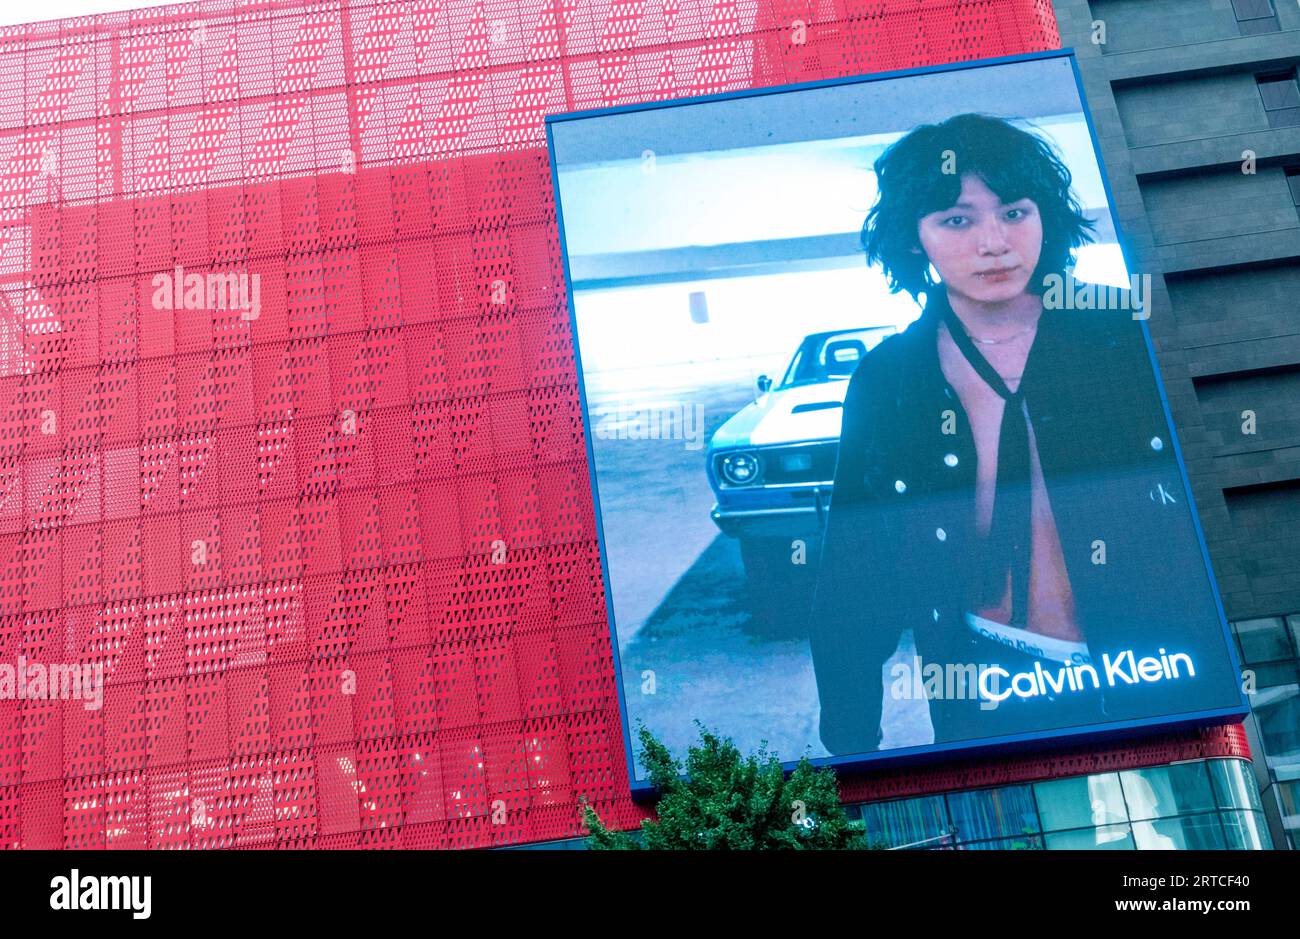 Jungkook (BTS), 12. September 2023: Ein Video für die Calvin Klein Herbst 2023 Campaign mit Jungkook wird auf einer LED-Platine in Seoul, Südkorea gesehen. Quelle: Lee Jae-Won/AFLO/Alamy Live News Stockfoto